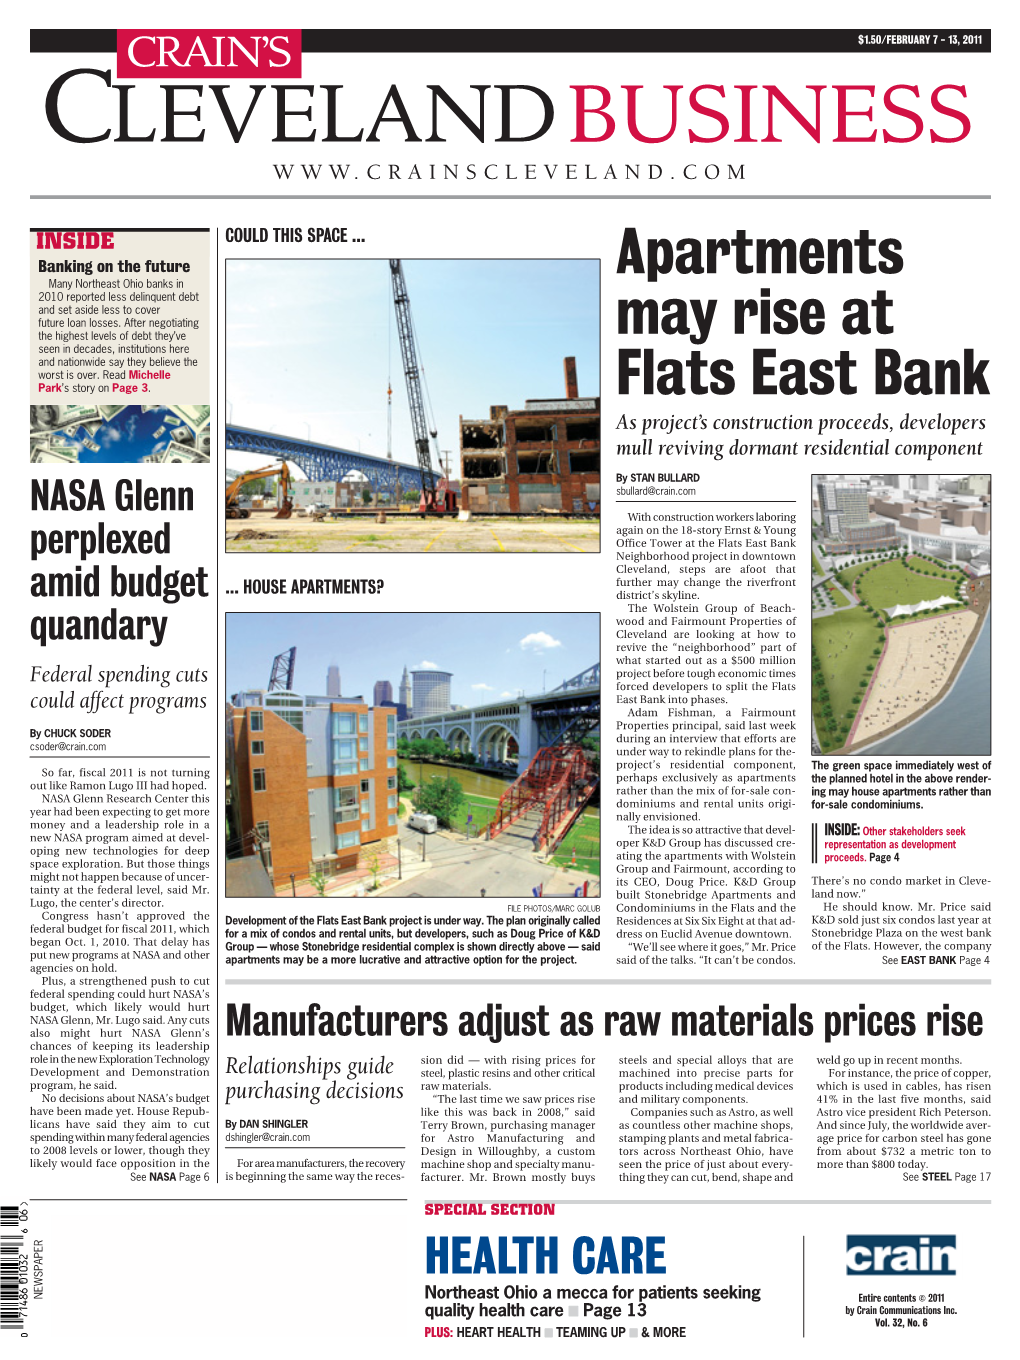 Apartments May Rise at Flats East Bank